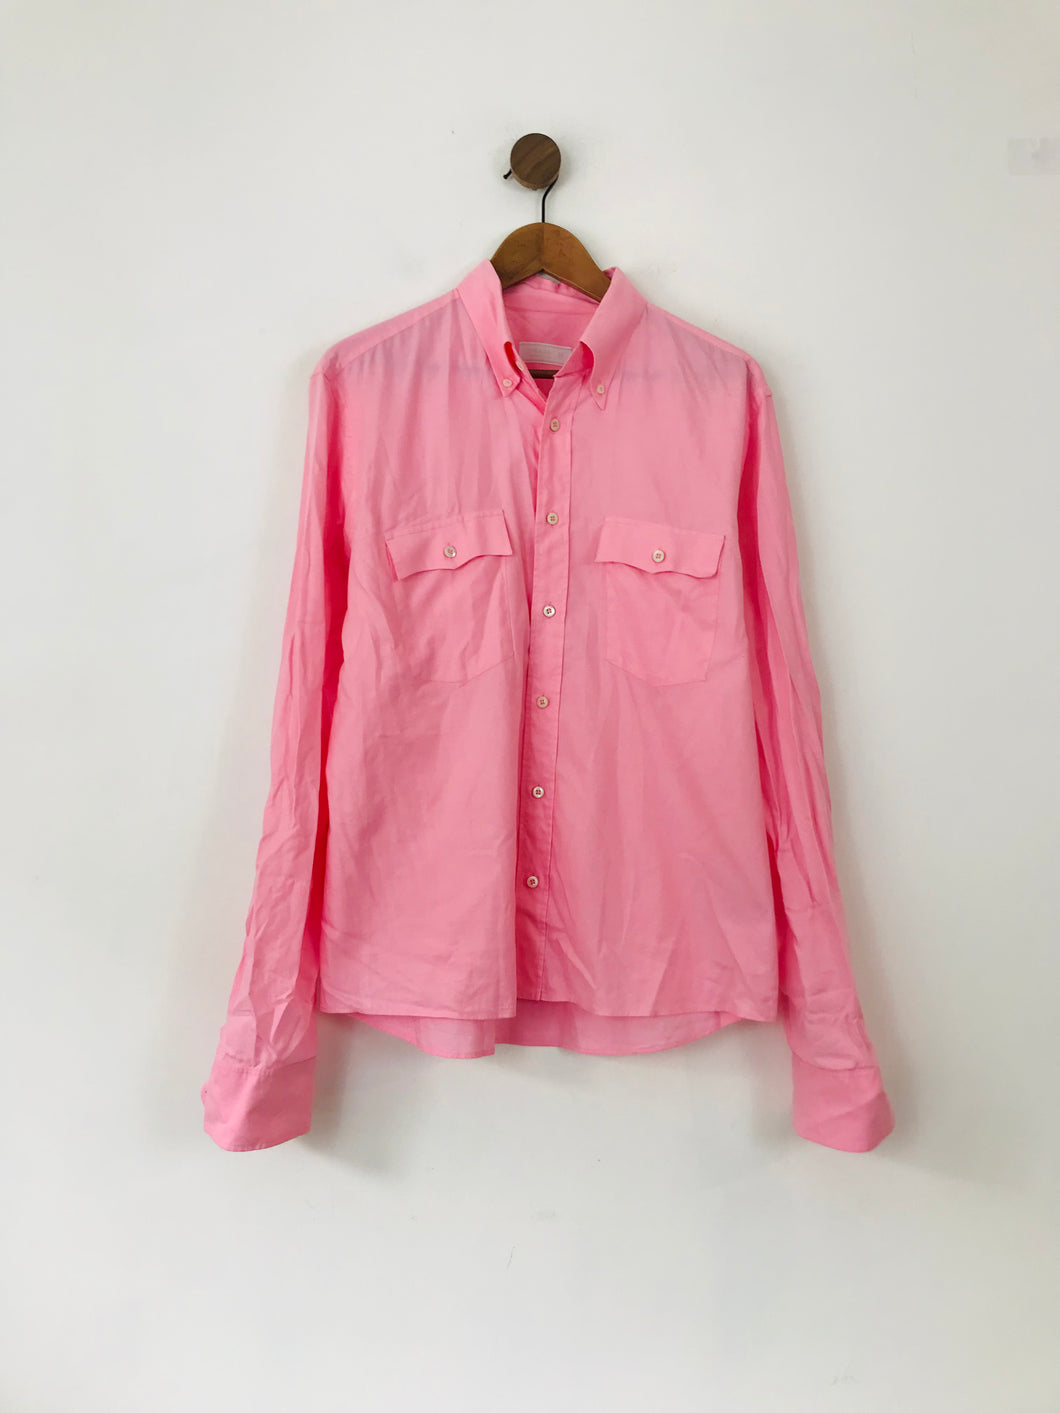 Prada Men's Button-Up Shirt | 17 43 | Pink